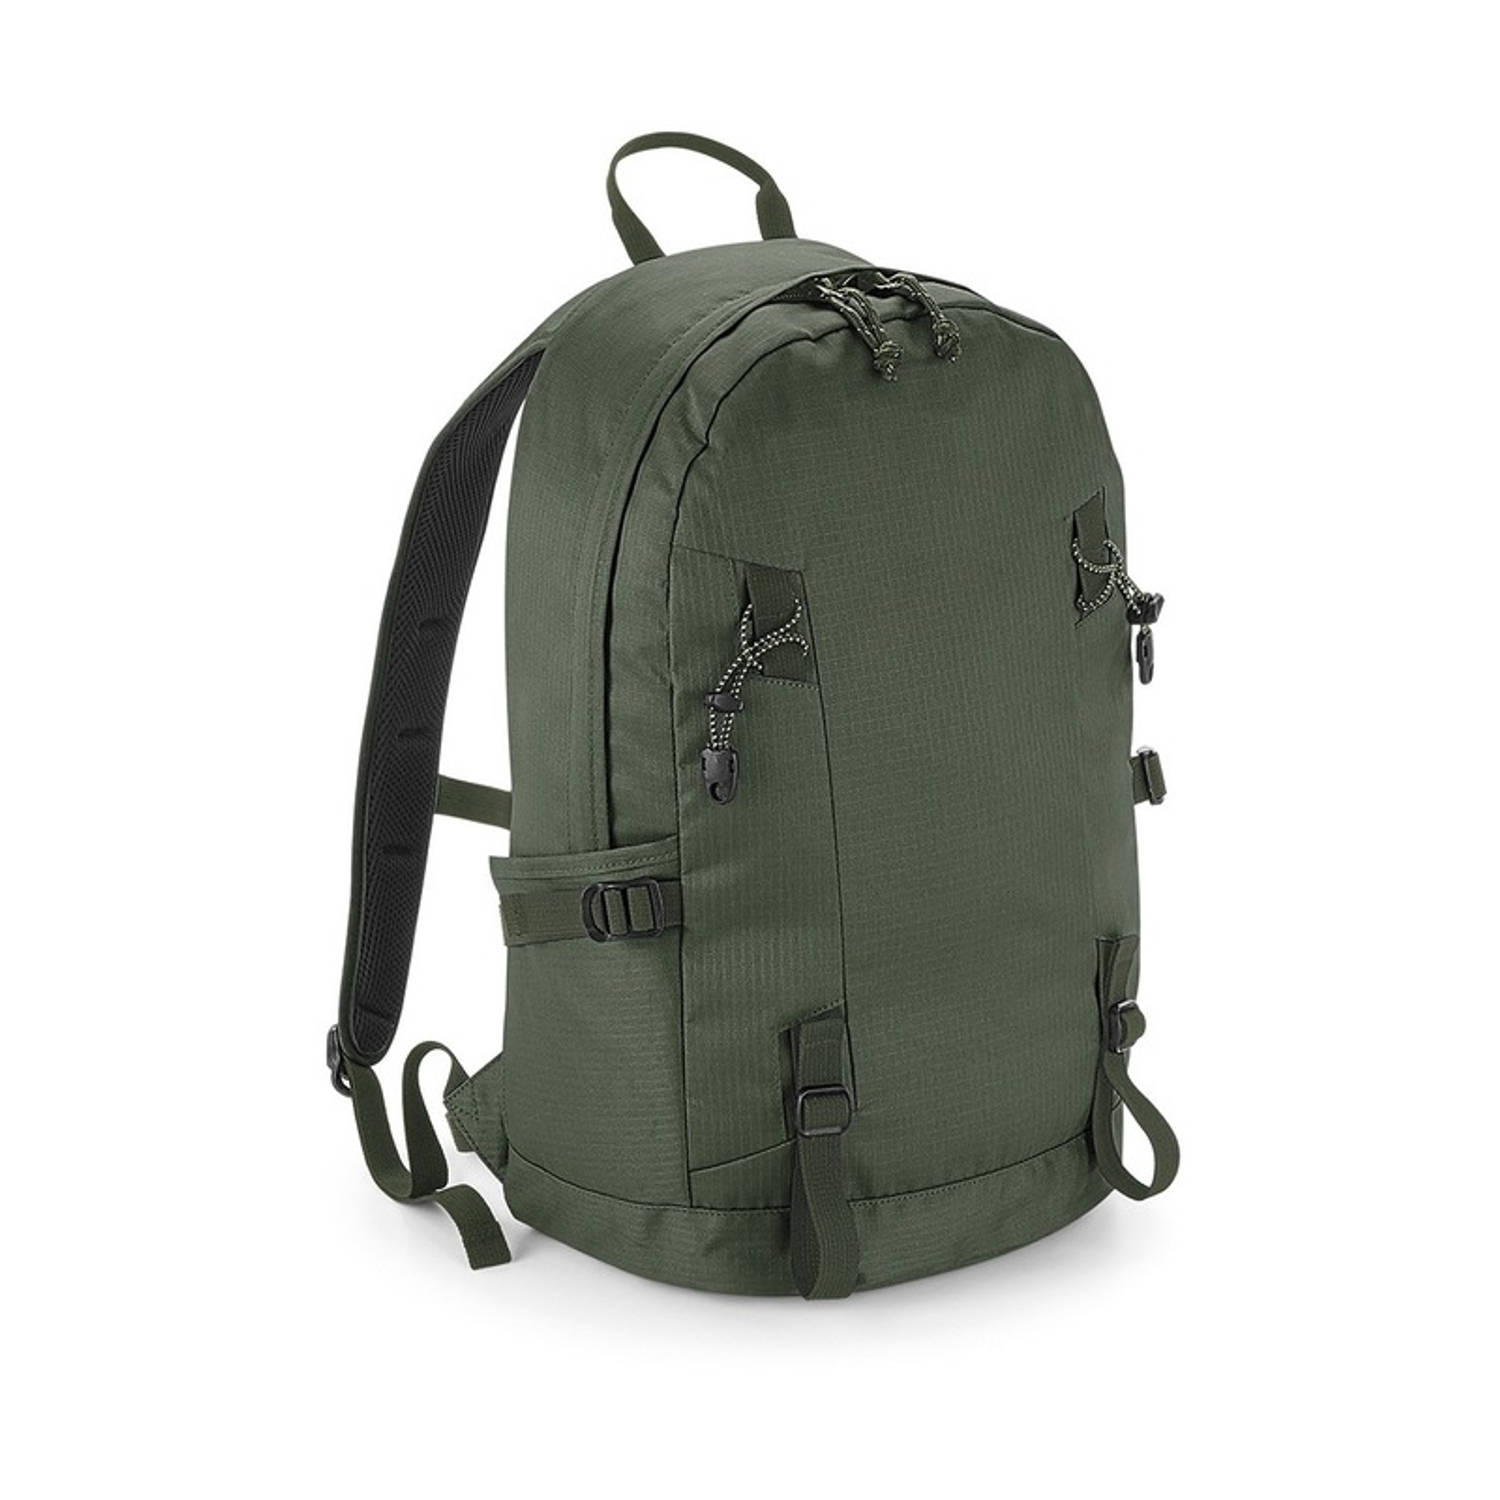 Olijf groene rugtas voor wandelaars/backpackers 20 liter - Rugzak